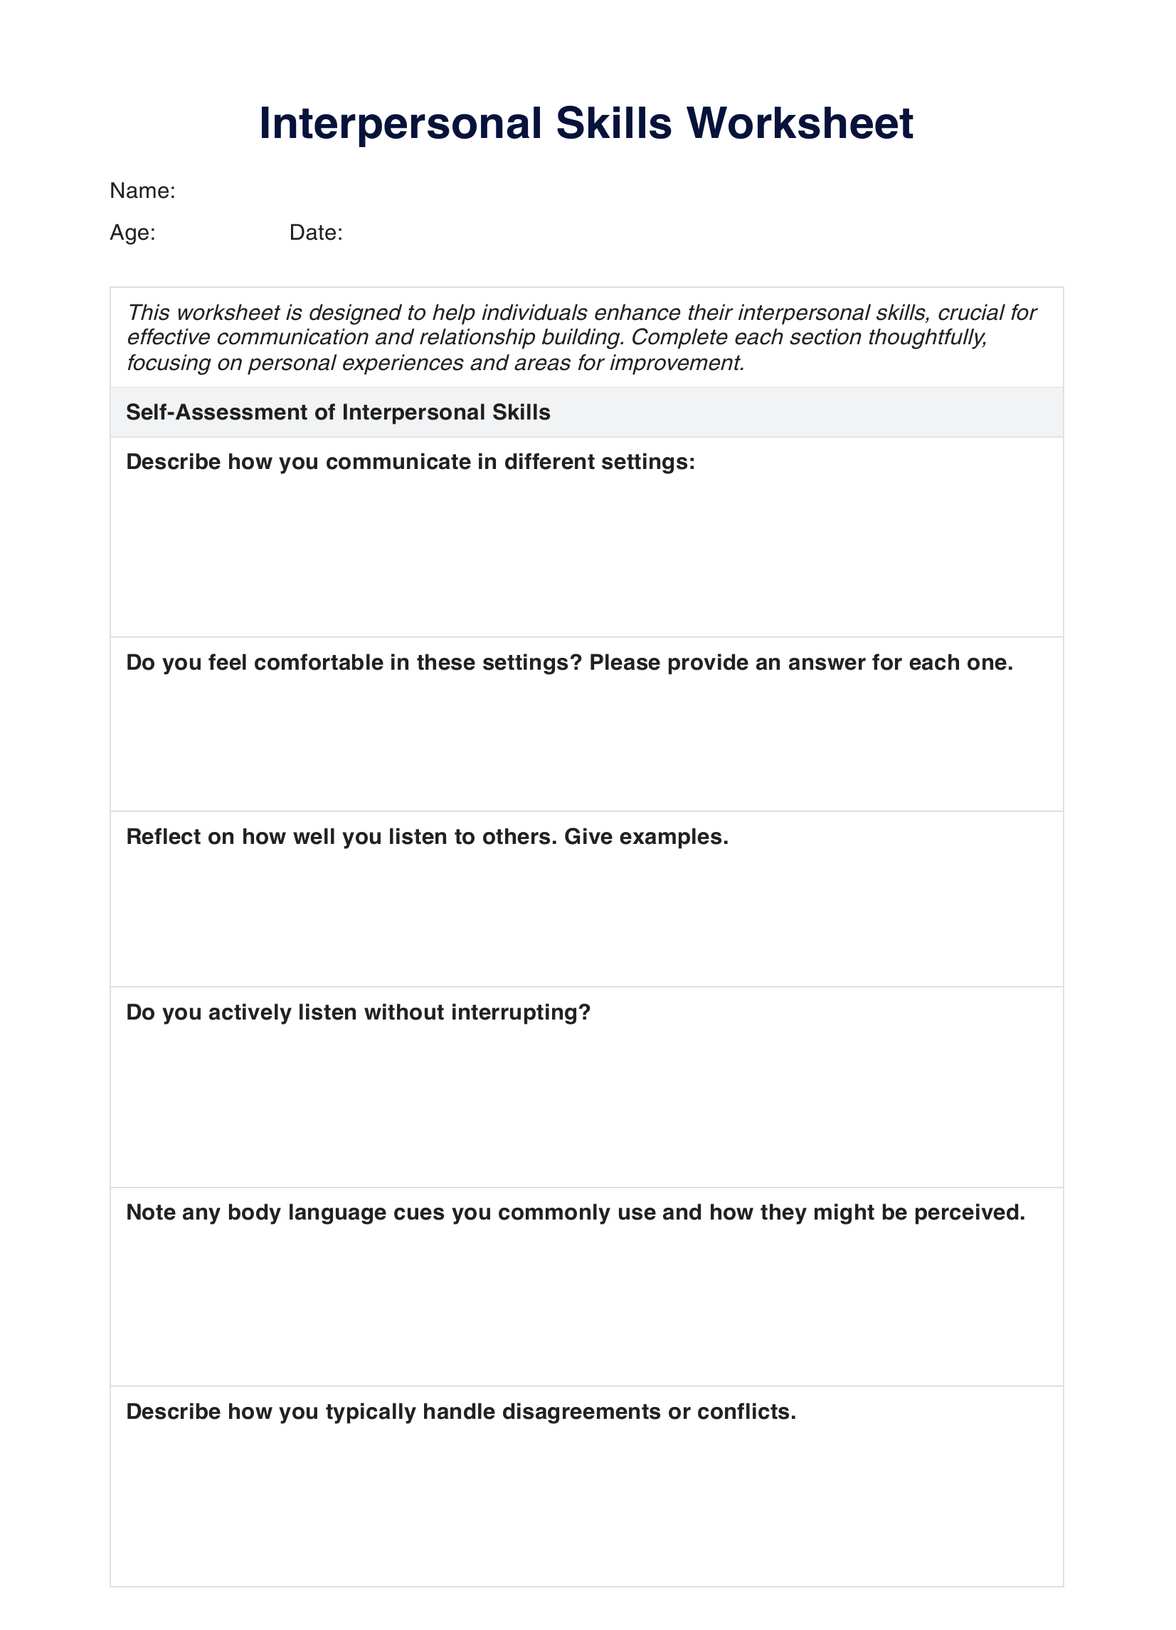 Interpersonal Skills Worksheet PDF Example